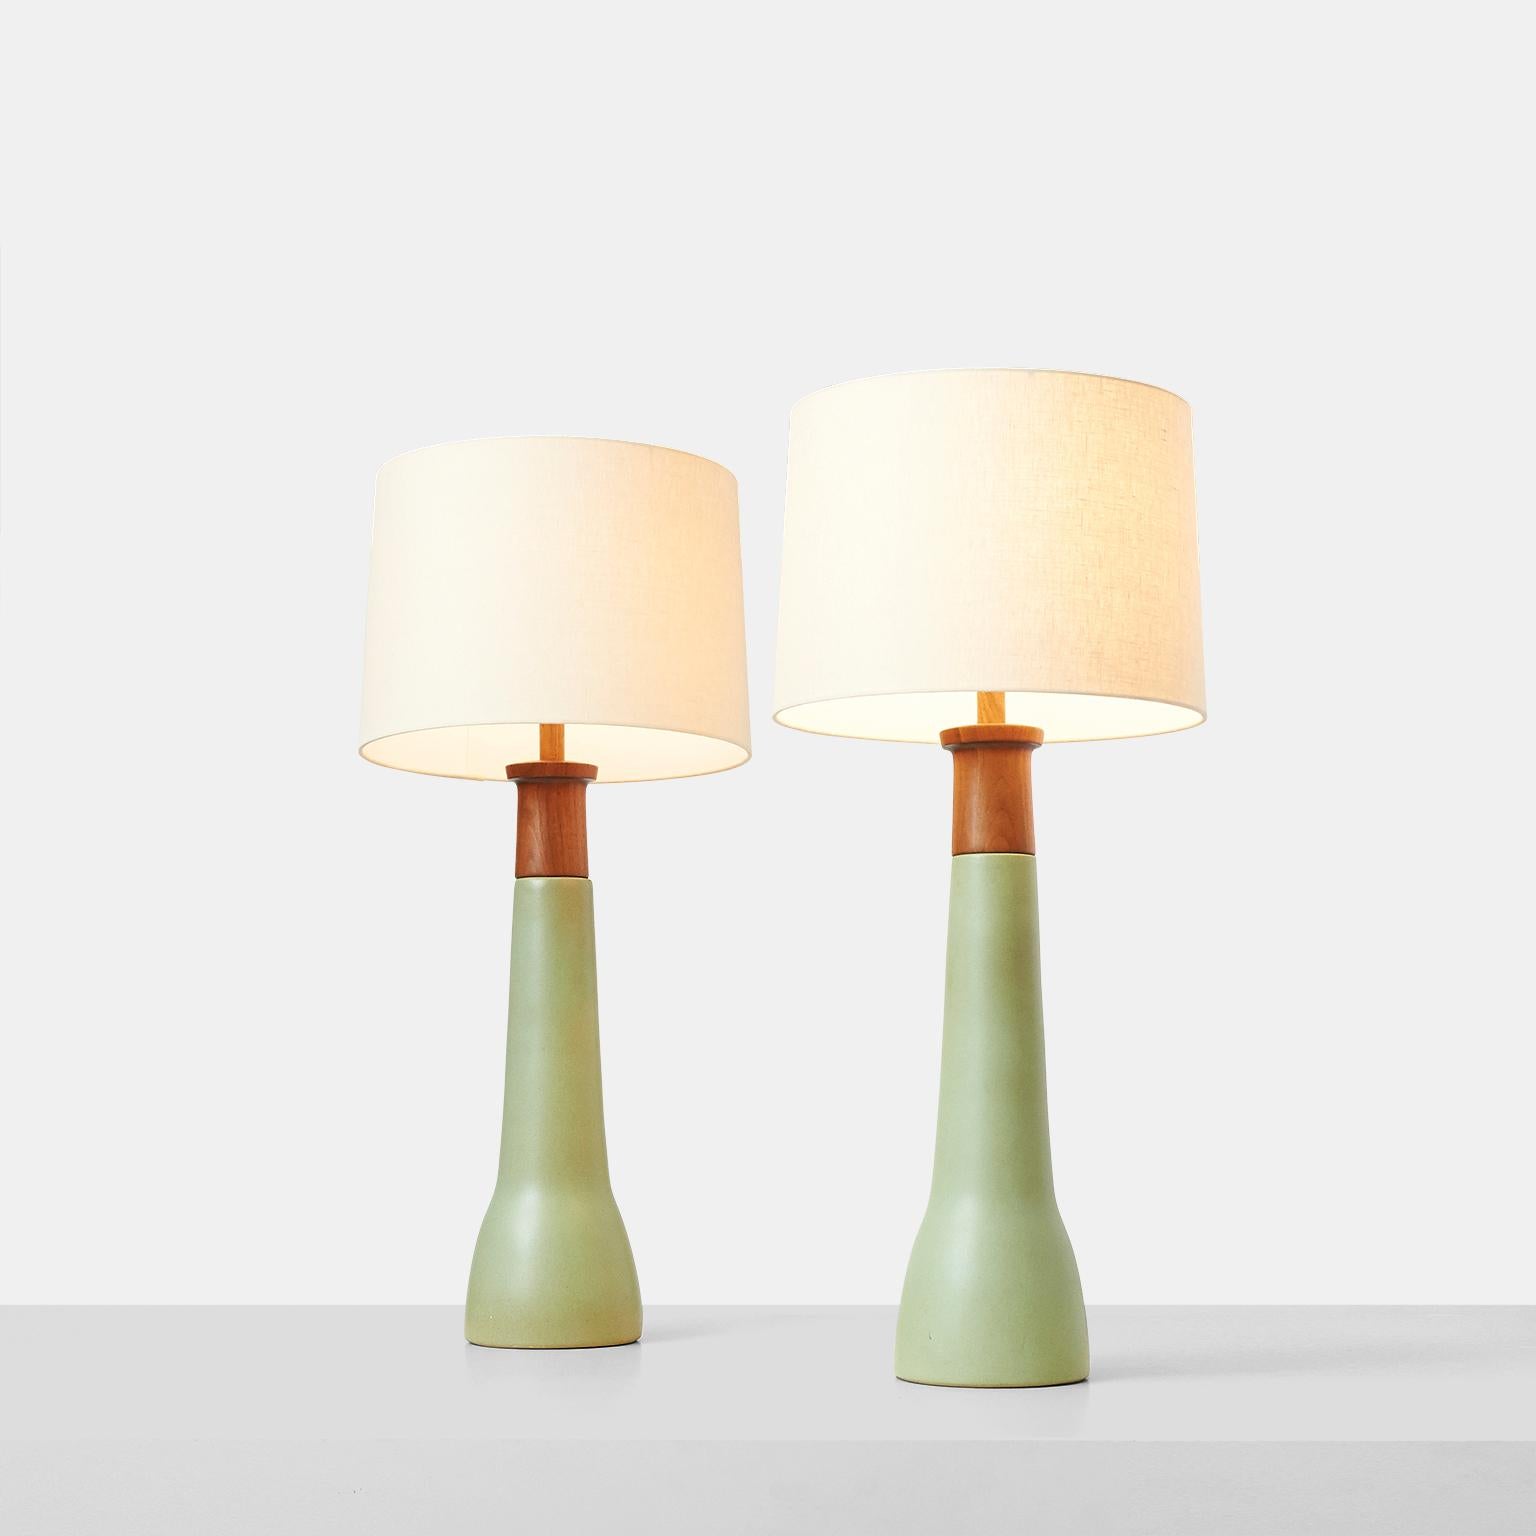 Une paire de hautes lampes de table en grès par Jane & Gordon Martz. Le luminaire en bois tourné en teck est fixé à la base en grès vert clair mat. Les deux lampes comprennent la harpe et l'embout en teck. Gravé 